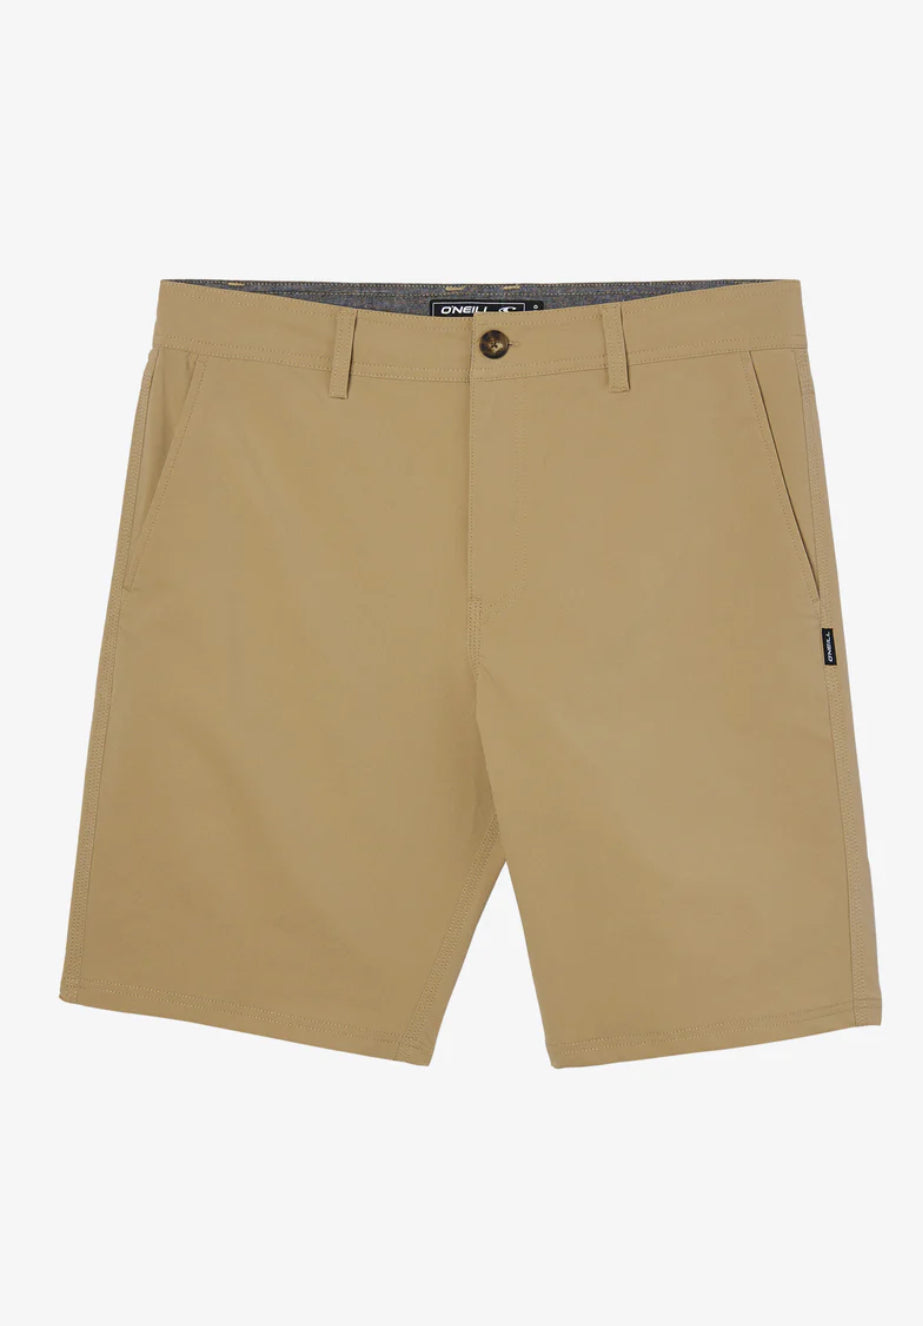 Stockton 20” Hybrid Shorts